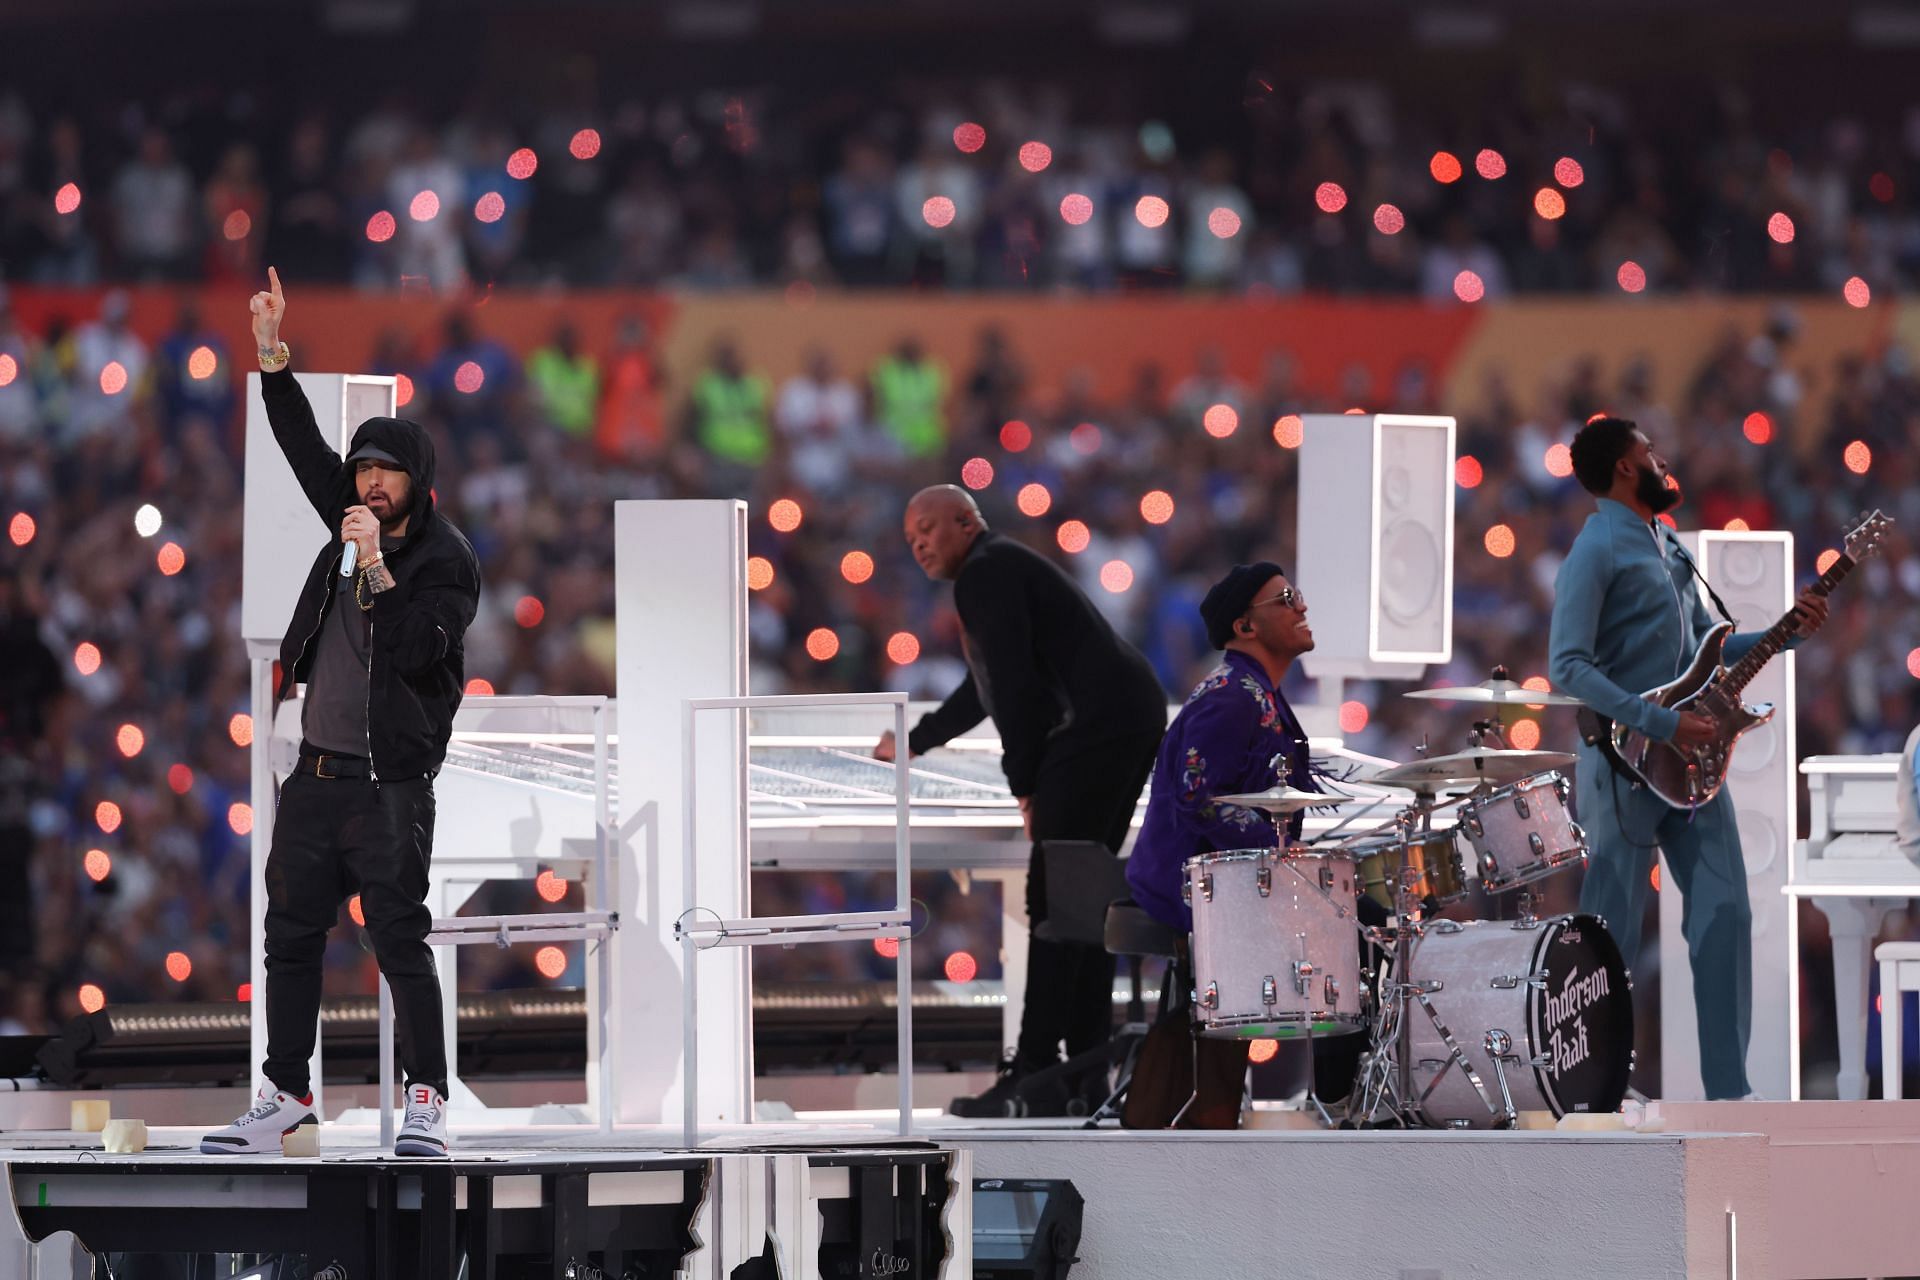 Super Bowl LVI Halftime Show: Eminem kneels, Snoop Dogg, Dr Dre